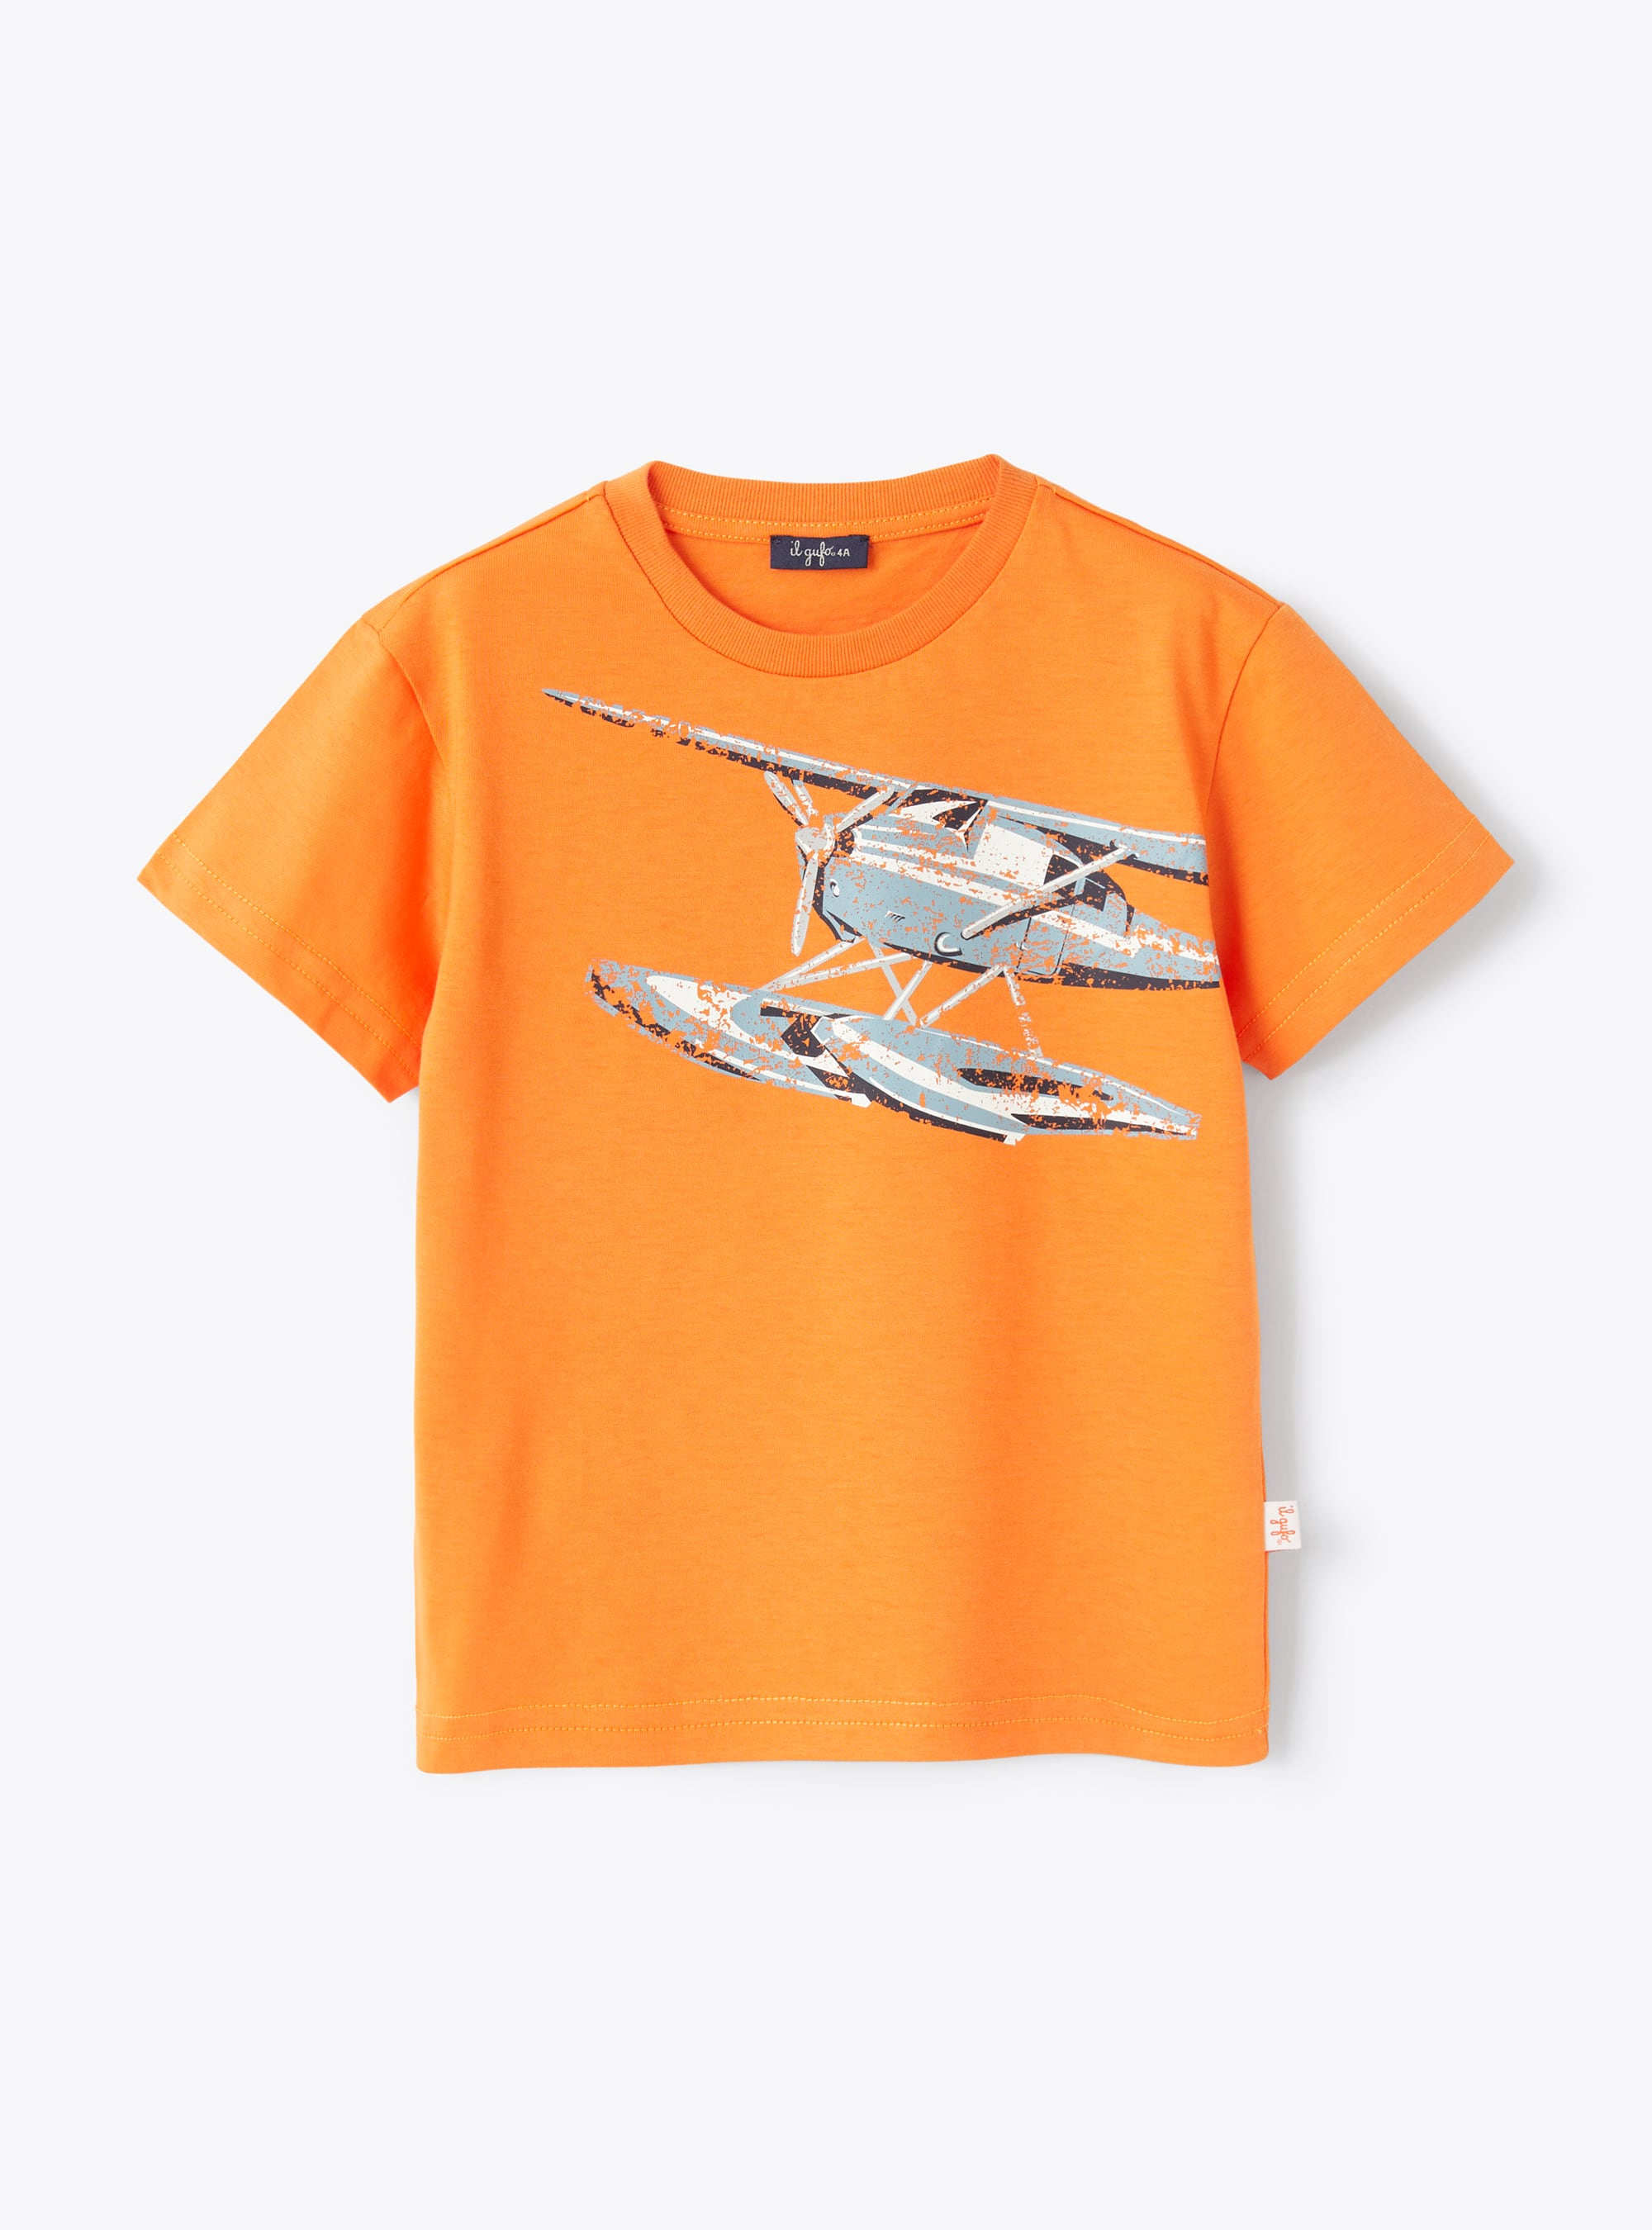 T-Shirt aus Jersey mit Helikopter-Aufdruck - T-shirts - Il Gufo